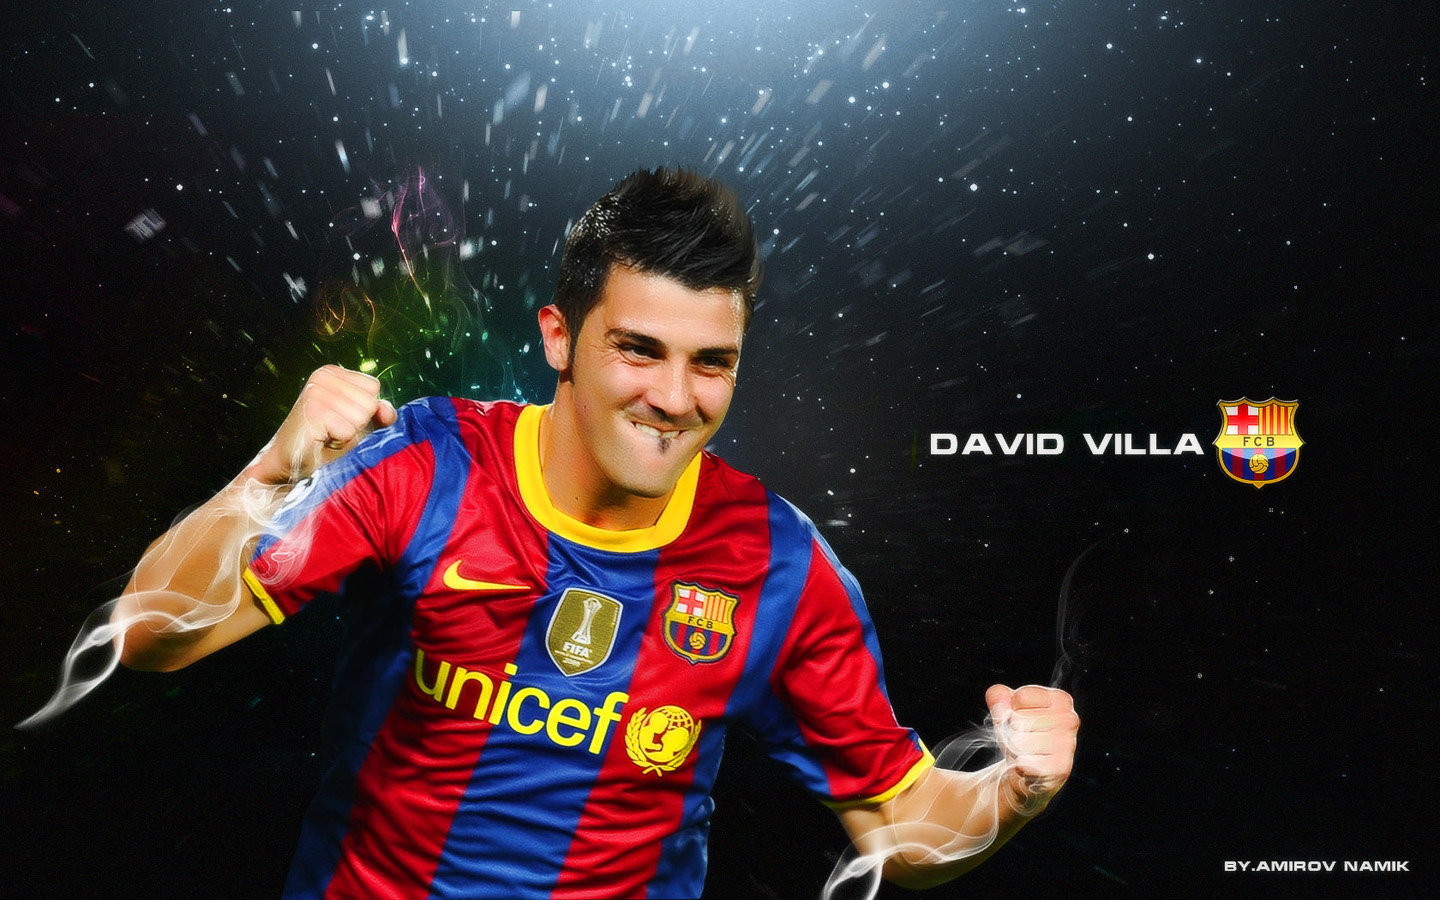 David Villa Fc Barcelona Wallpaper - David Villa Fc Barcelona - HD Wallpaper 